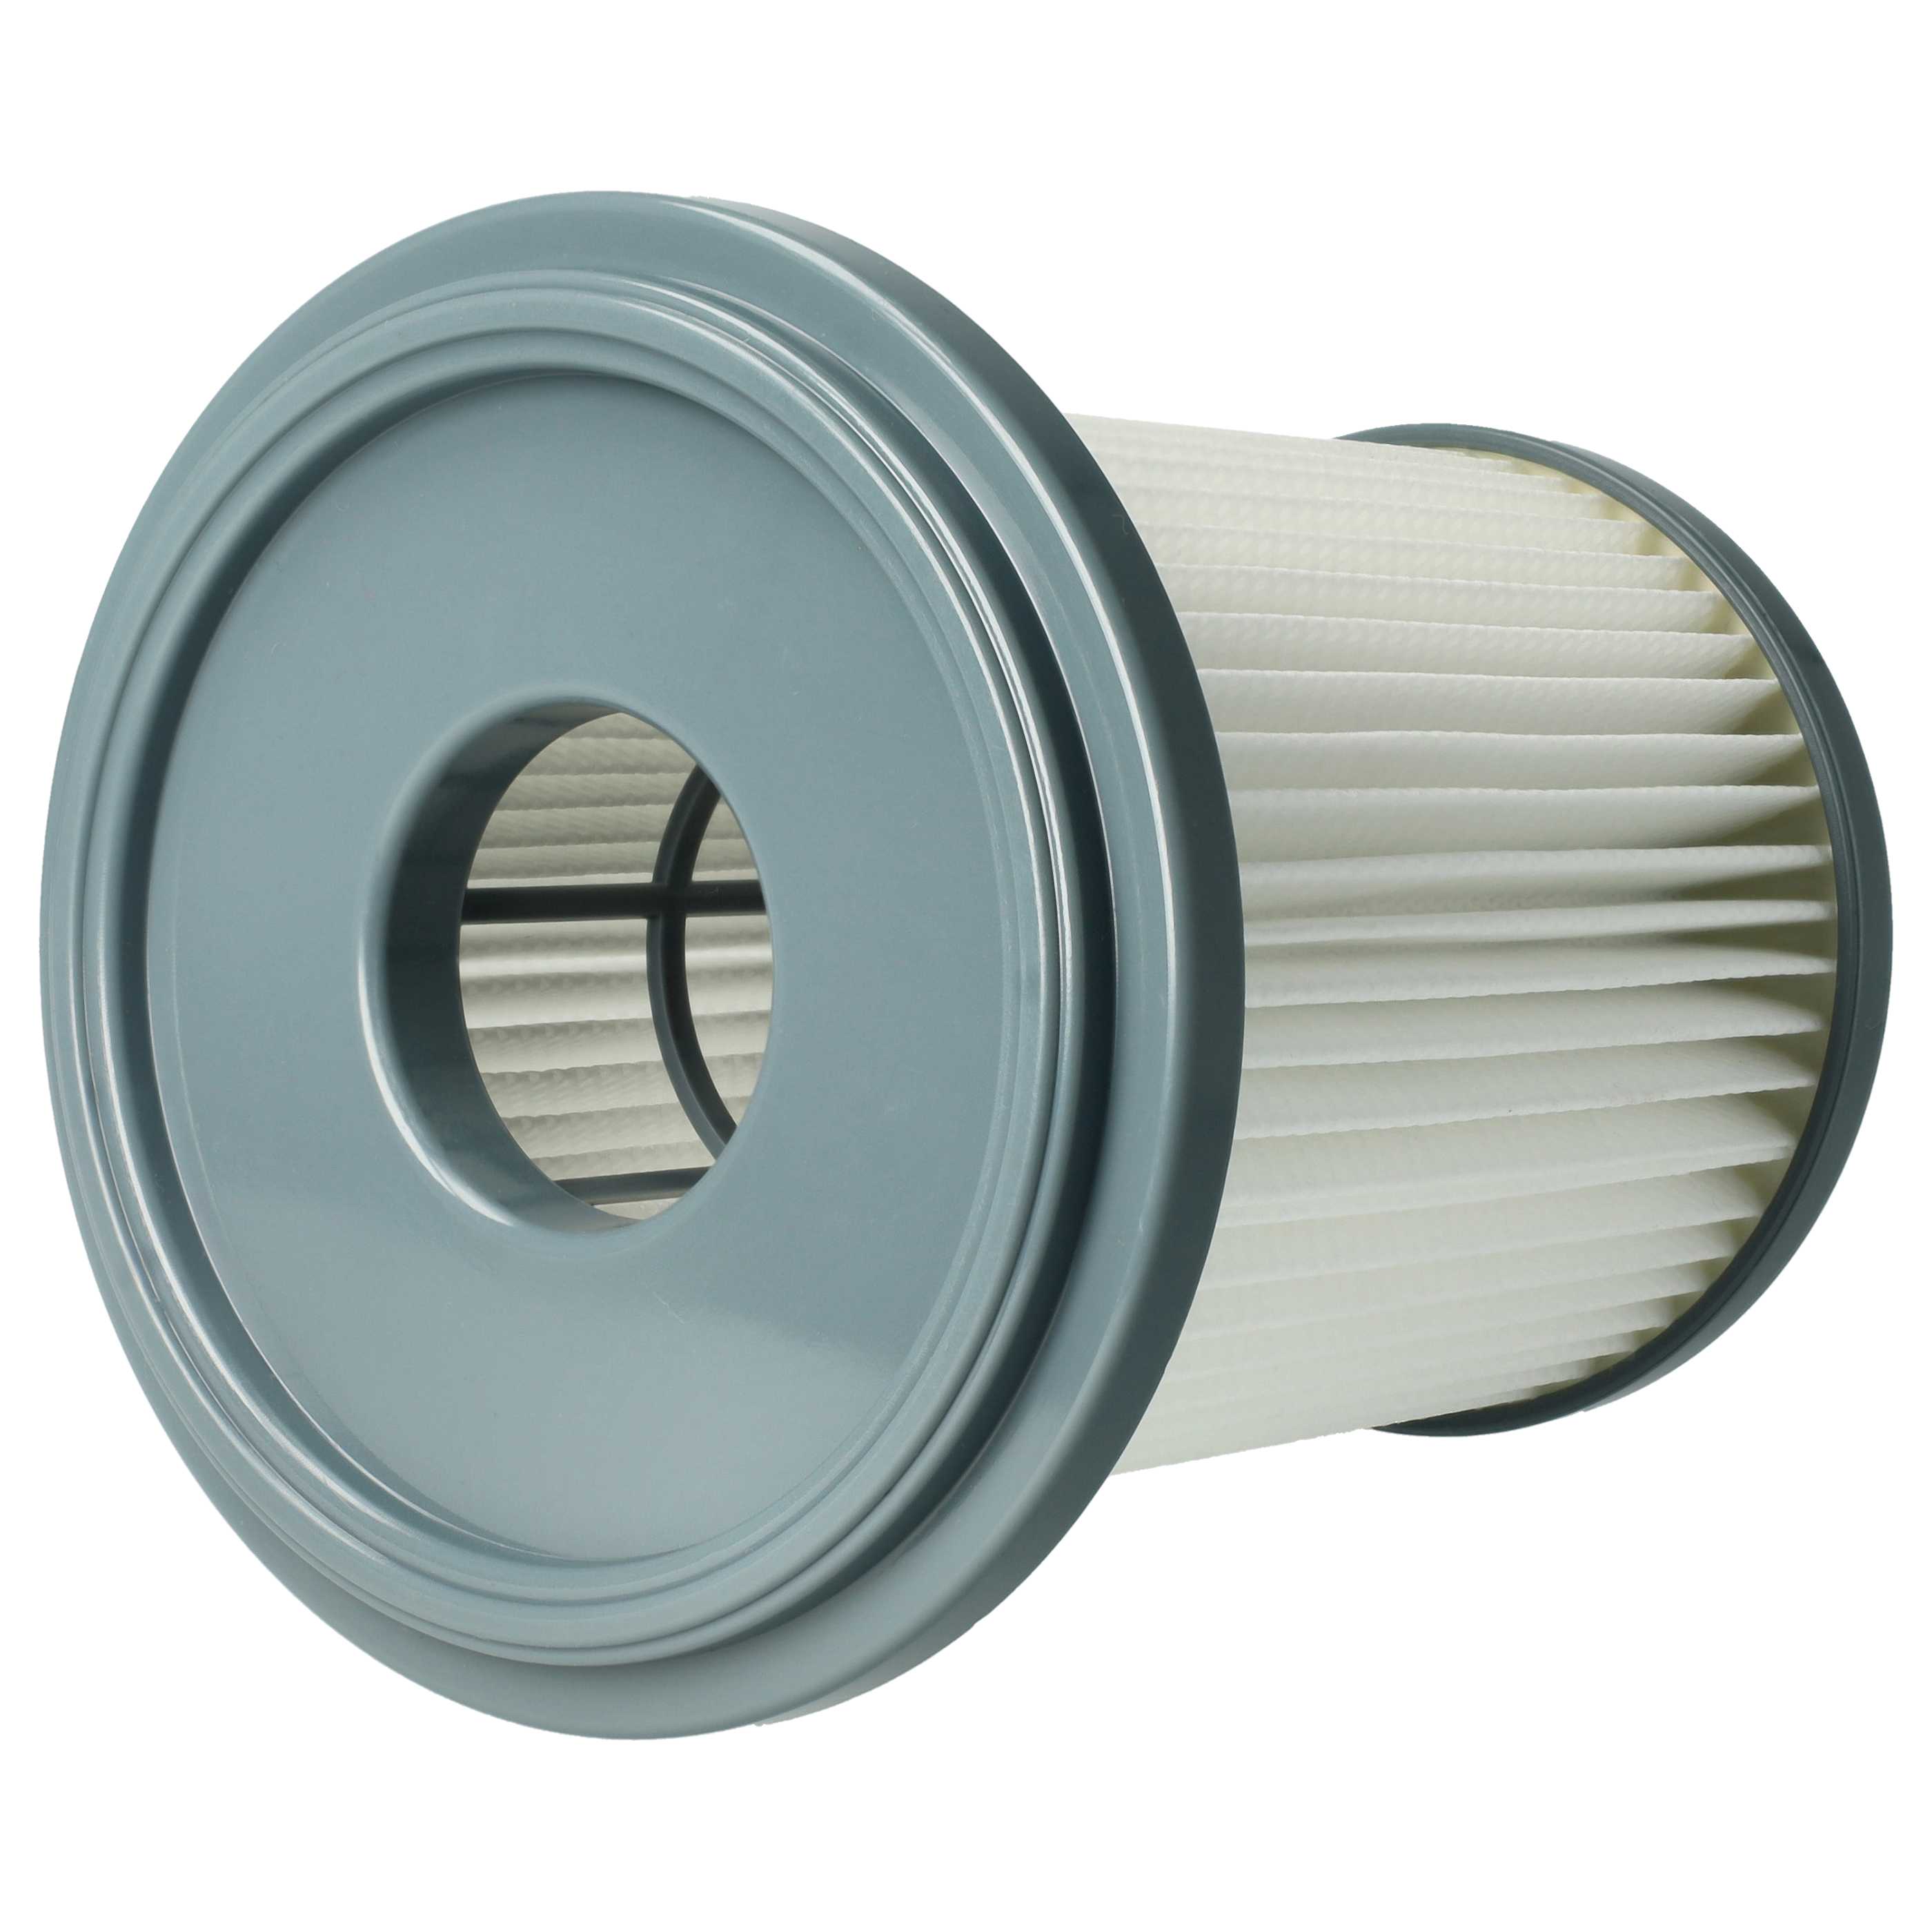 Filtre remplace Philips 432200909790, 432200493320 pour aspirateur - filtre HEPA